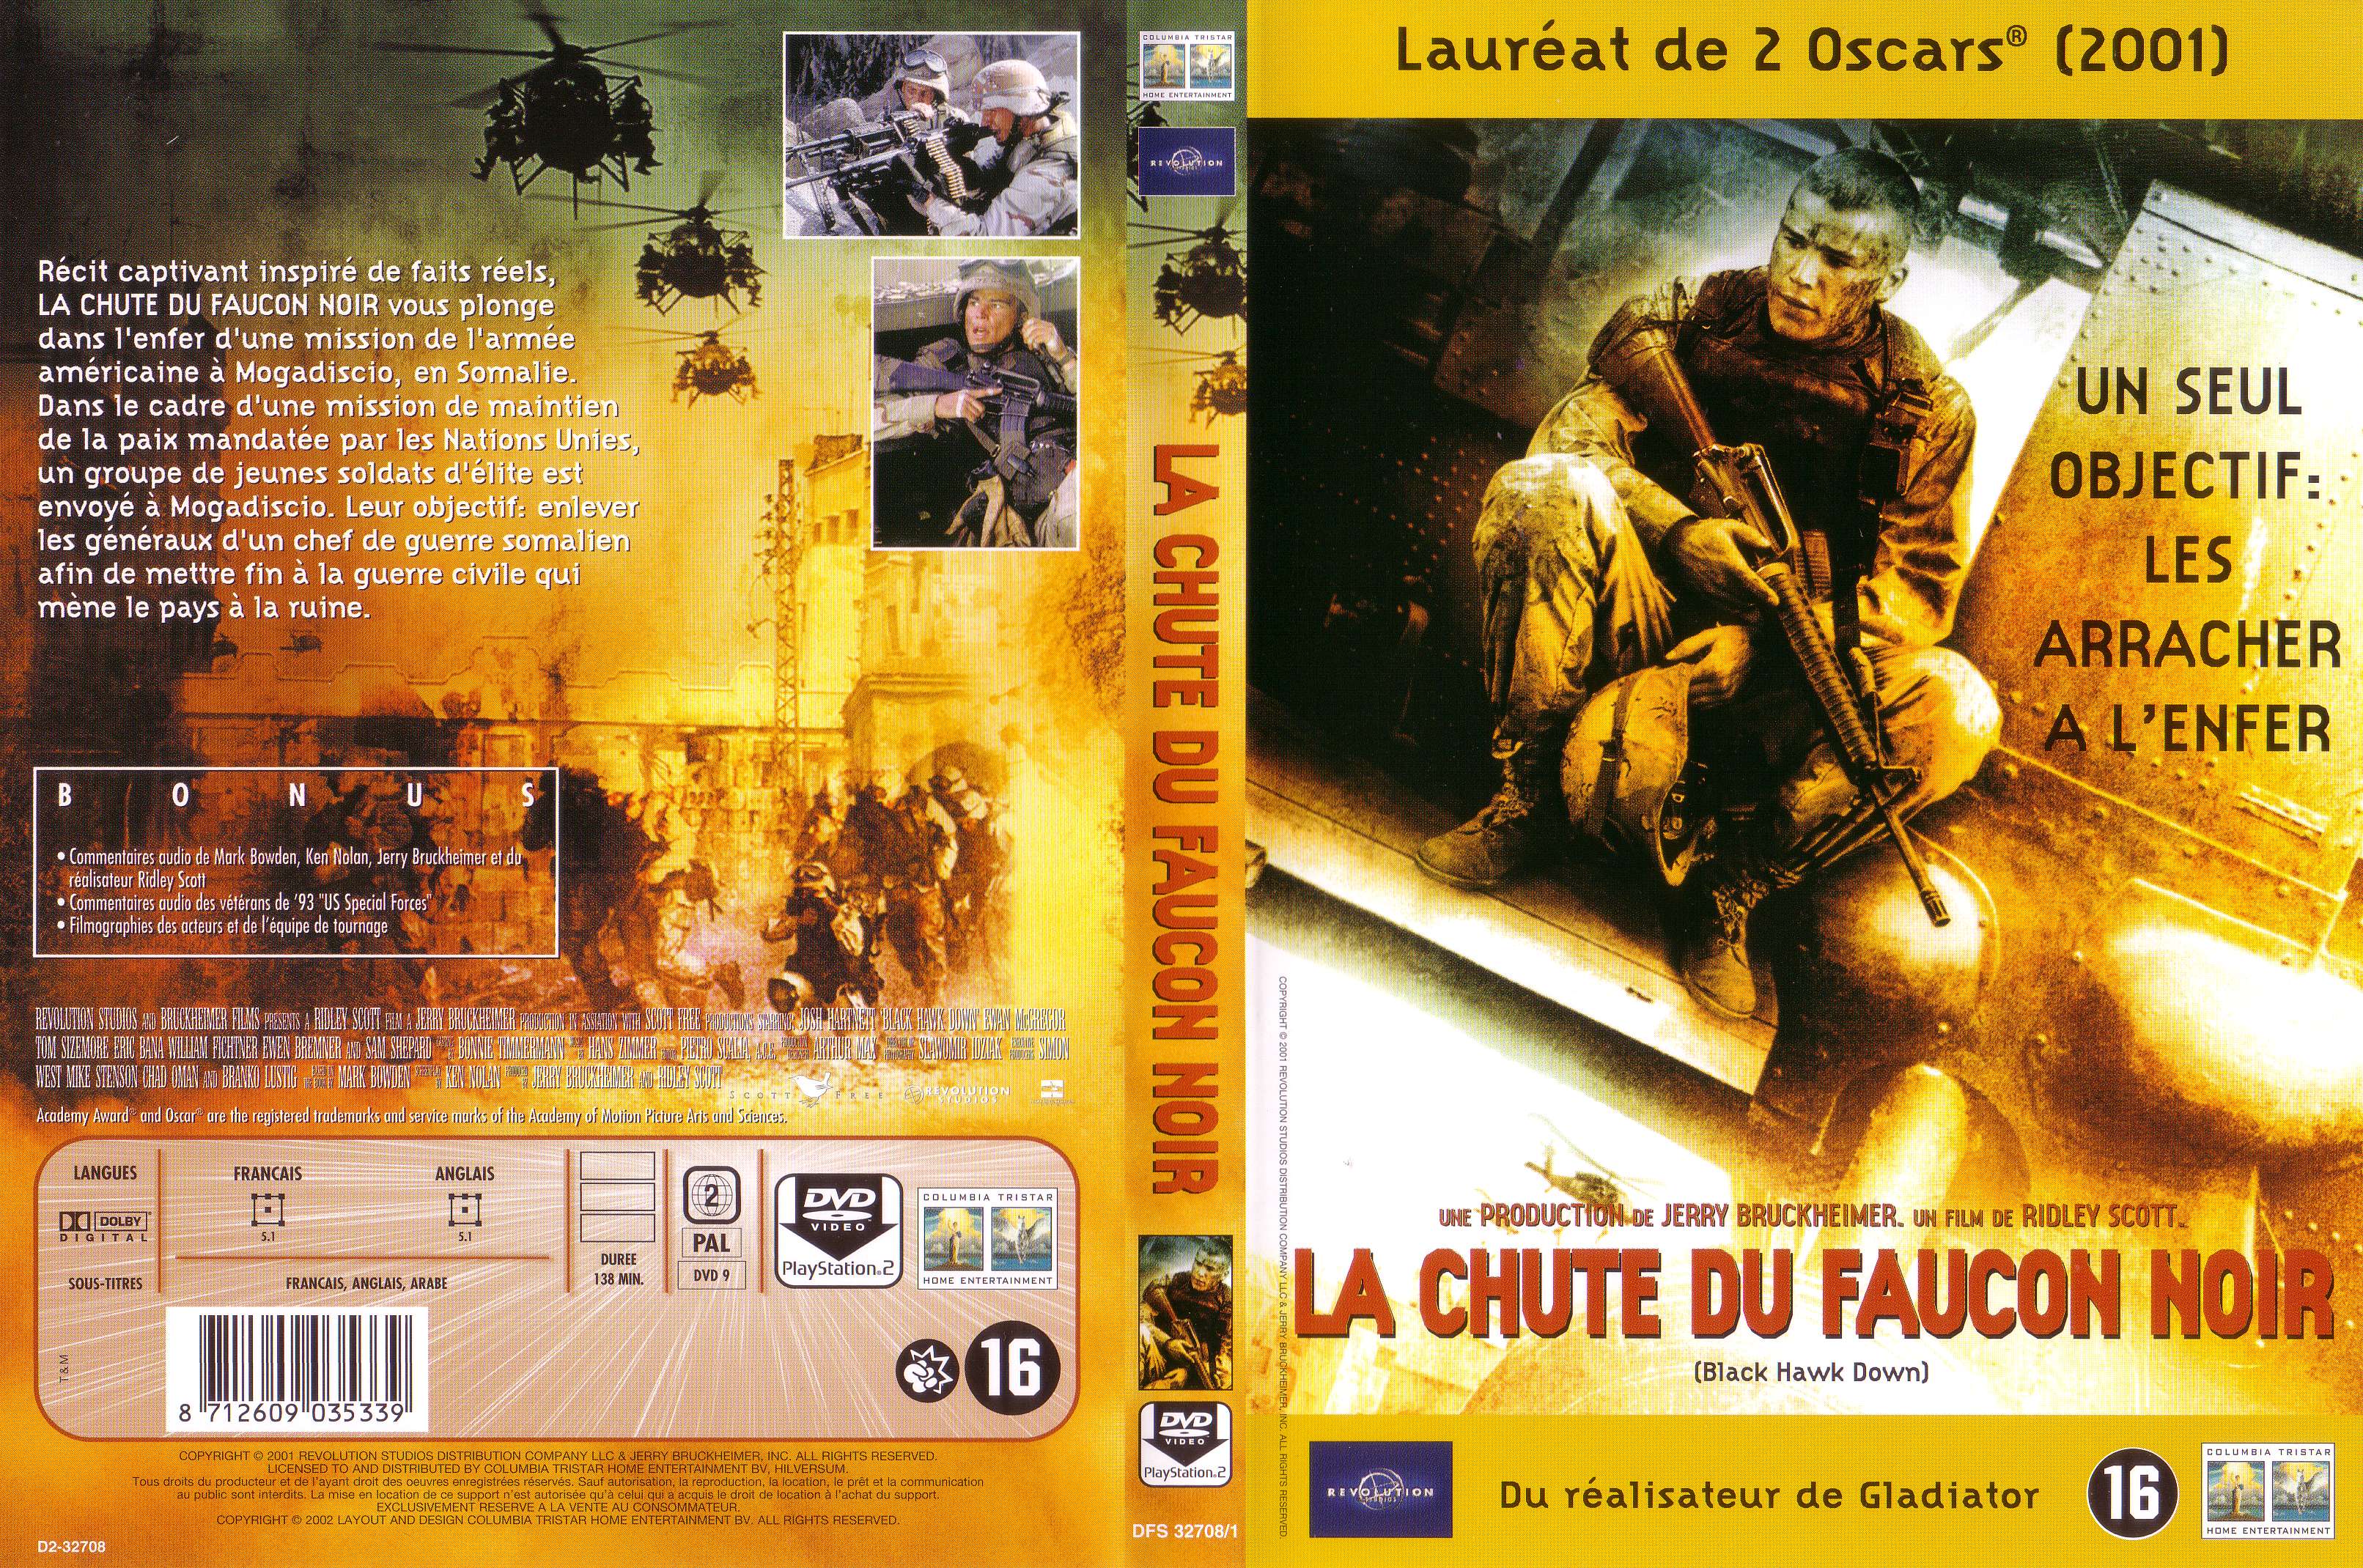 Jaquette DVD La chute du faucon noir v2